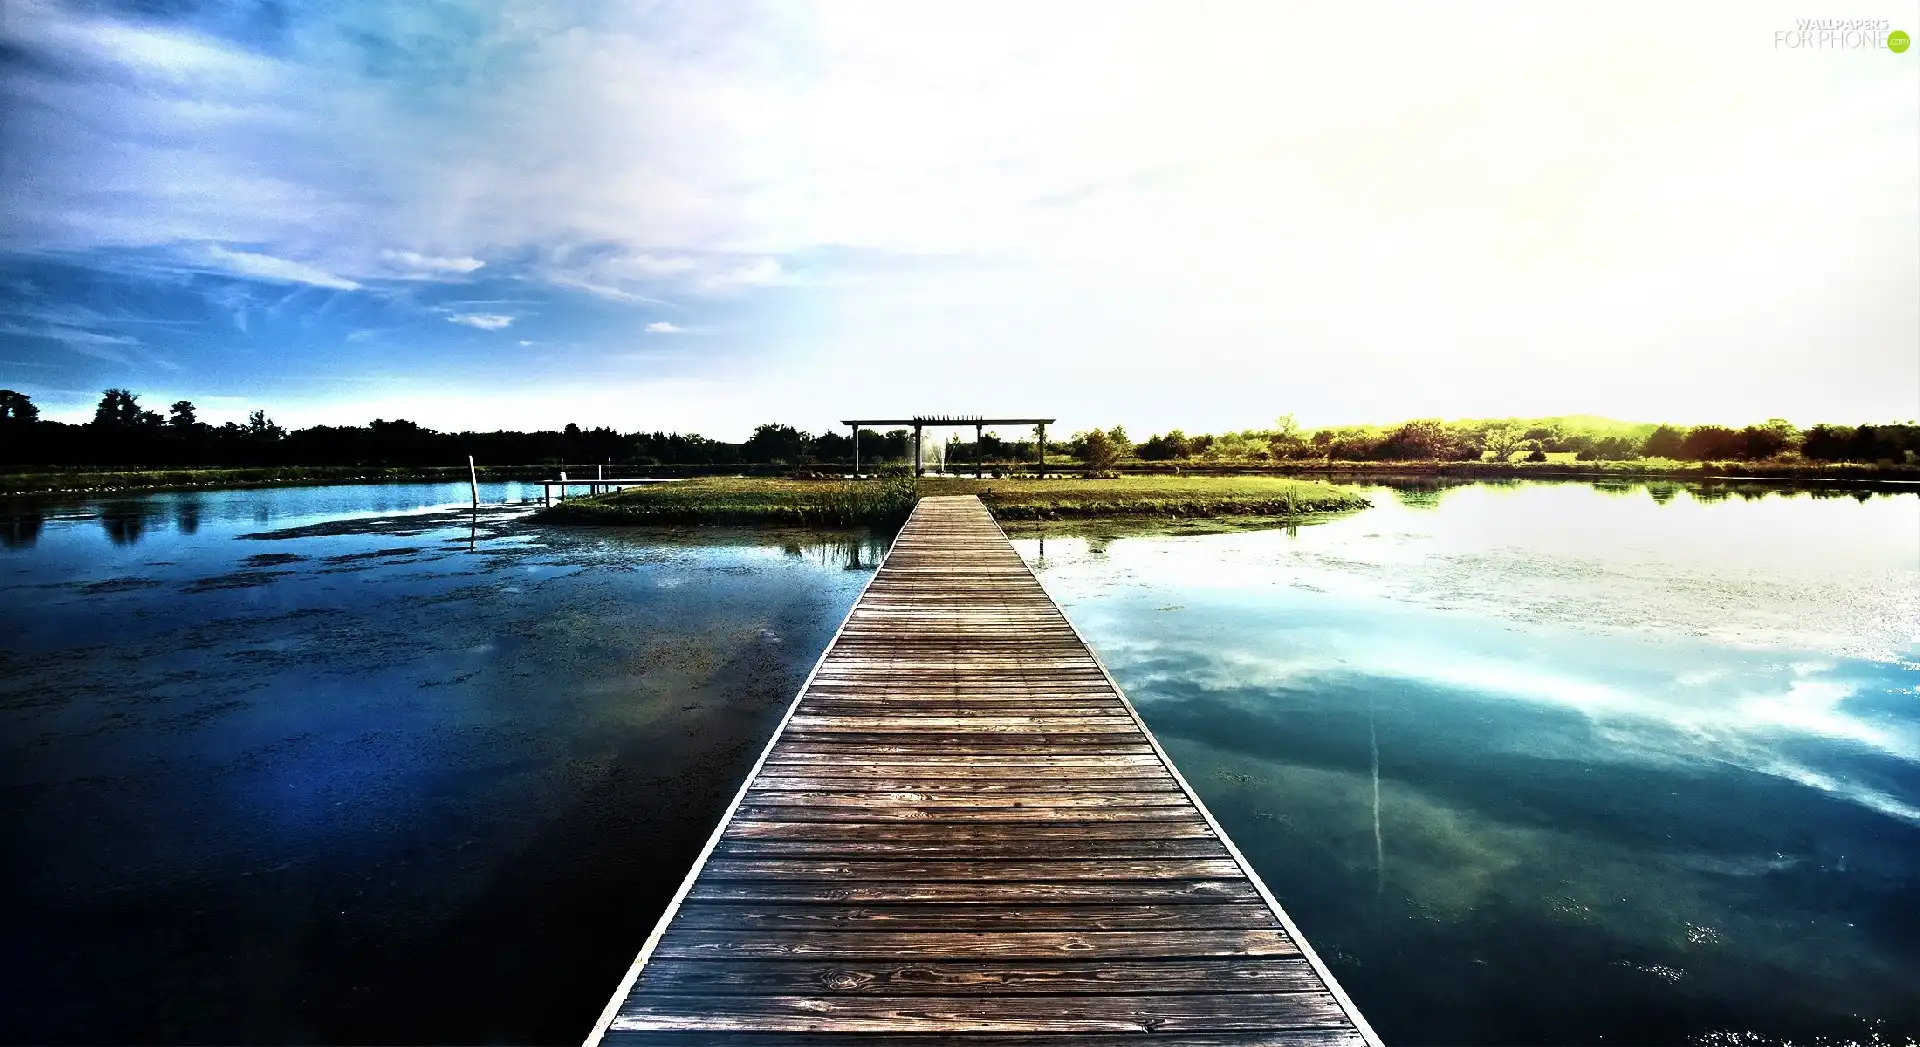 Islet, lake, footbridge